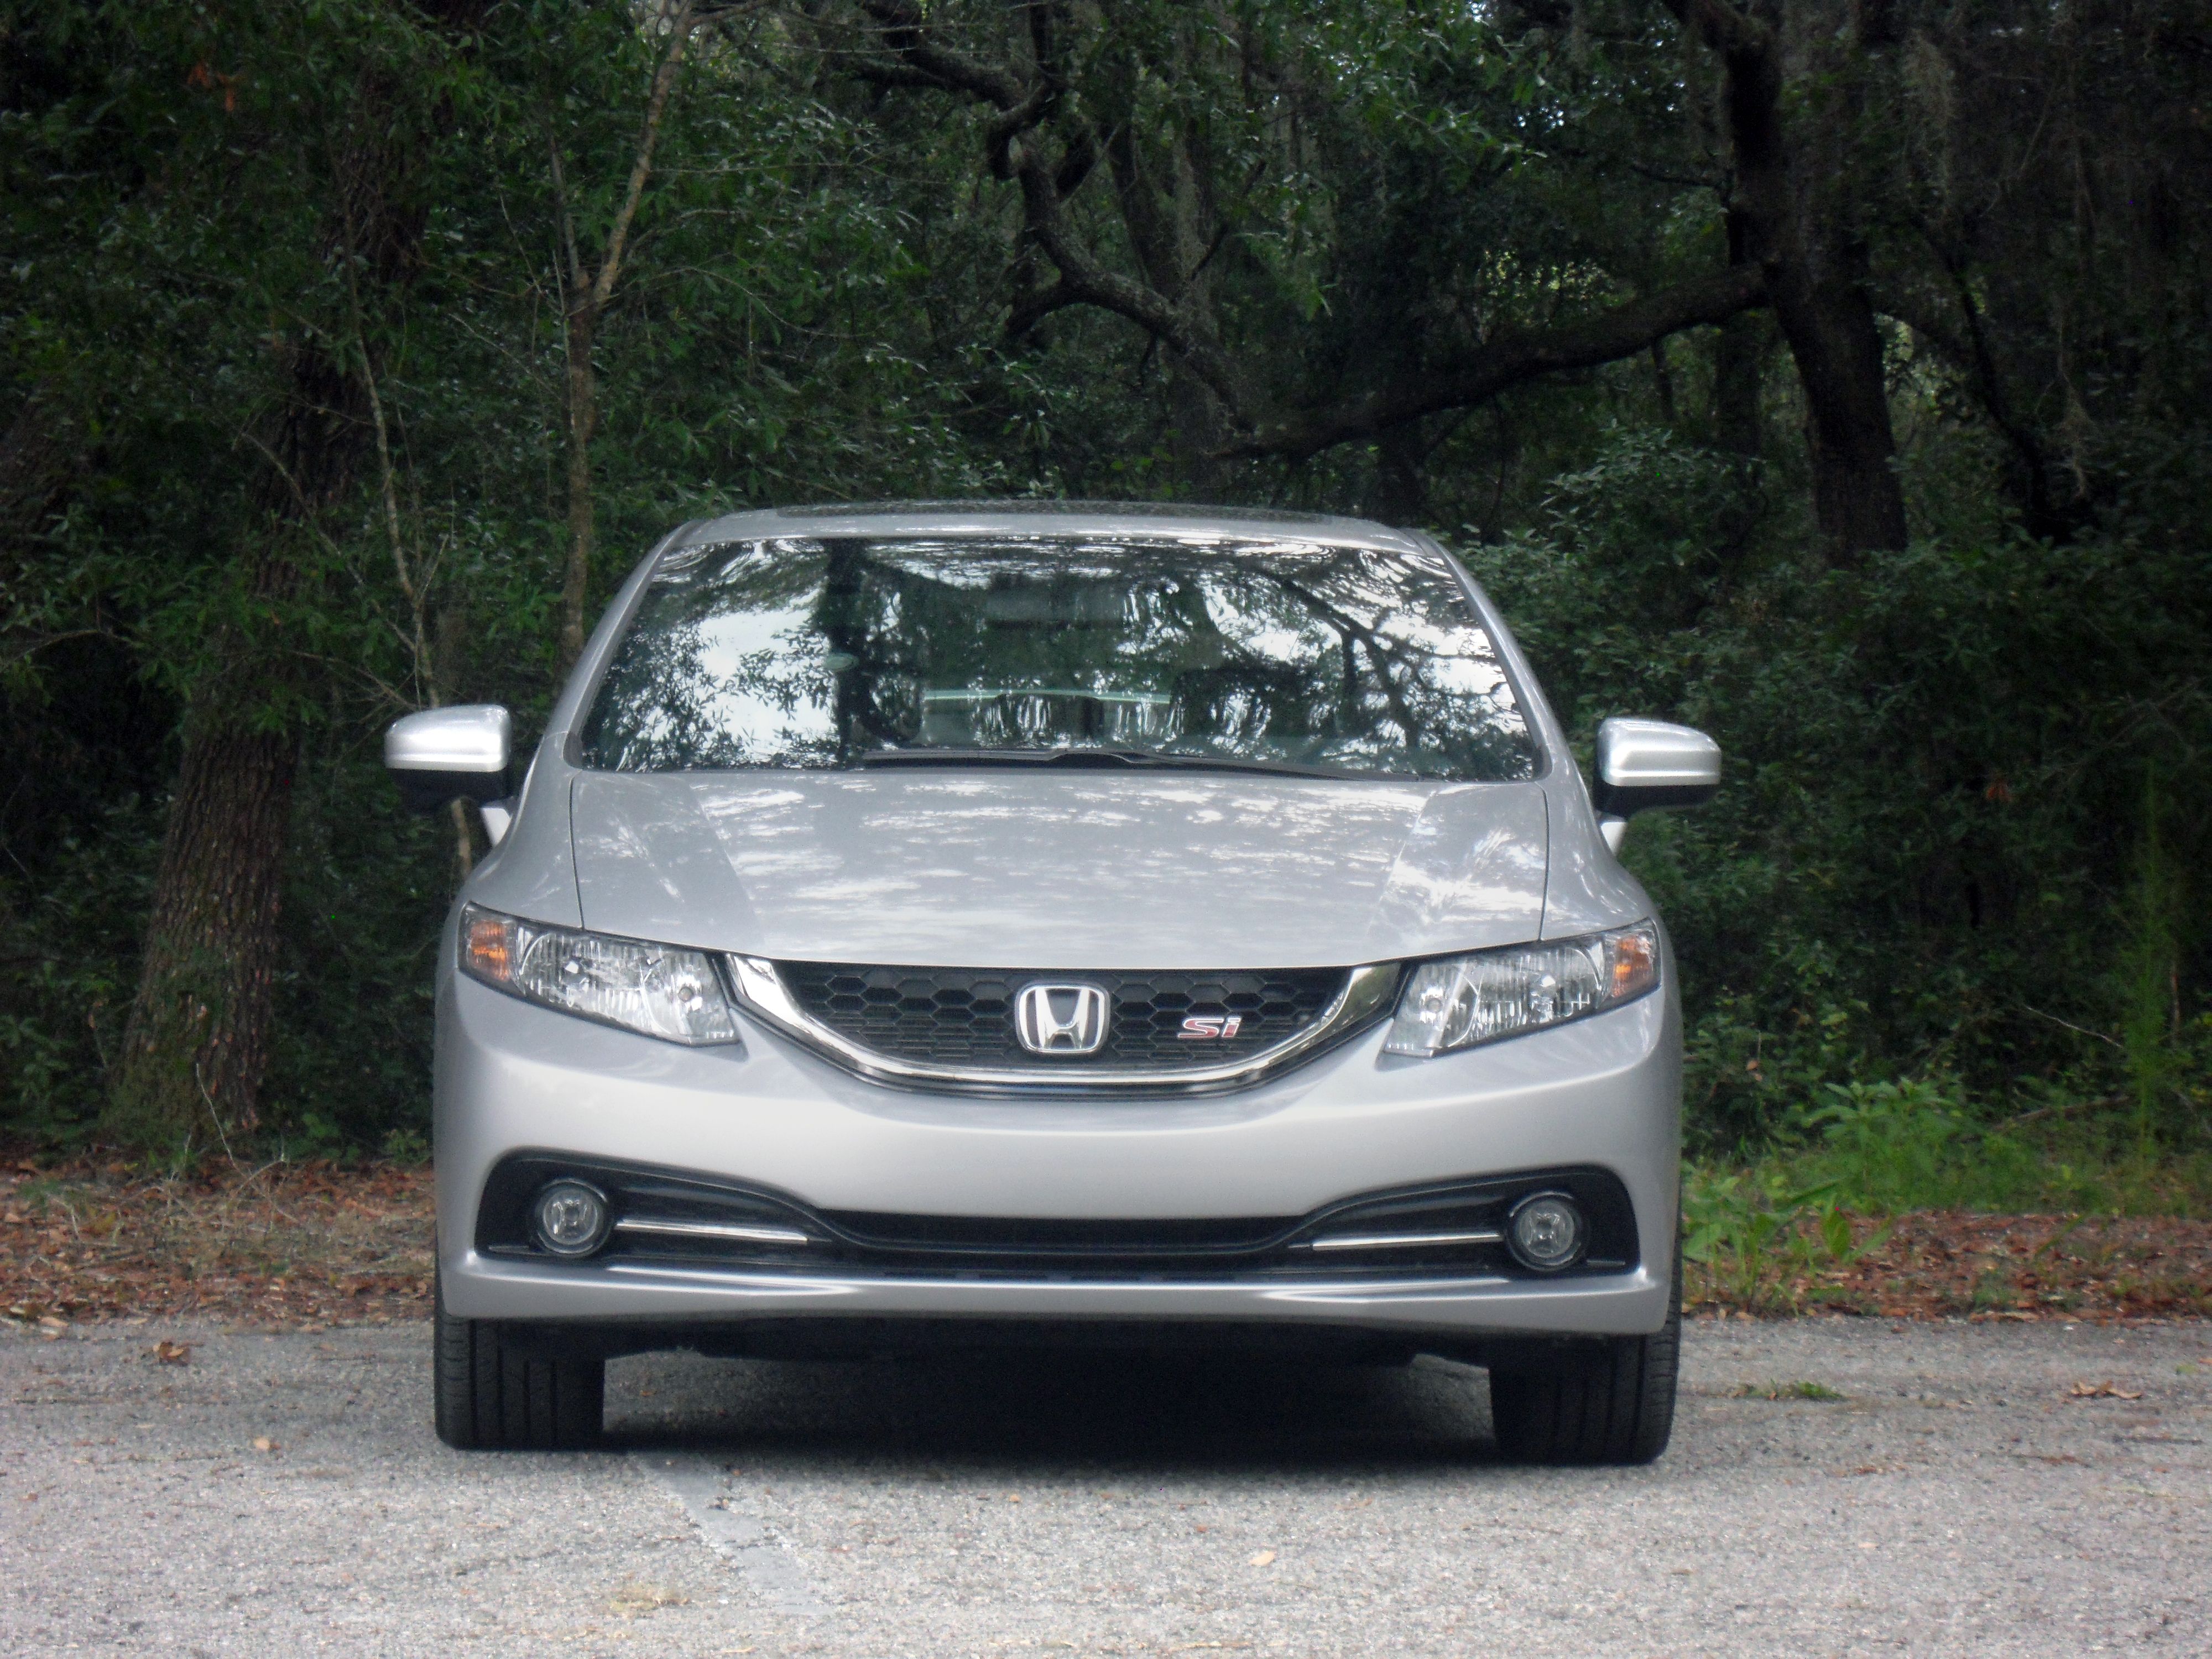 2014 Honda Civic Si Sedan - Driven